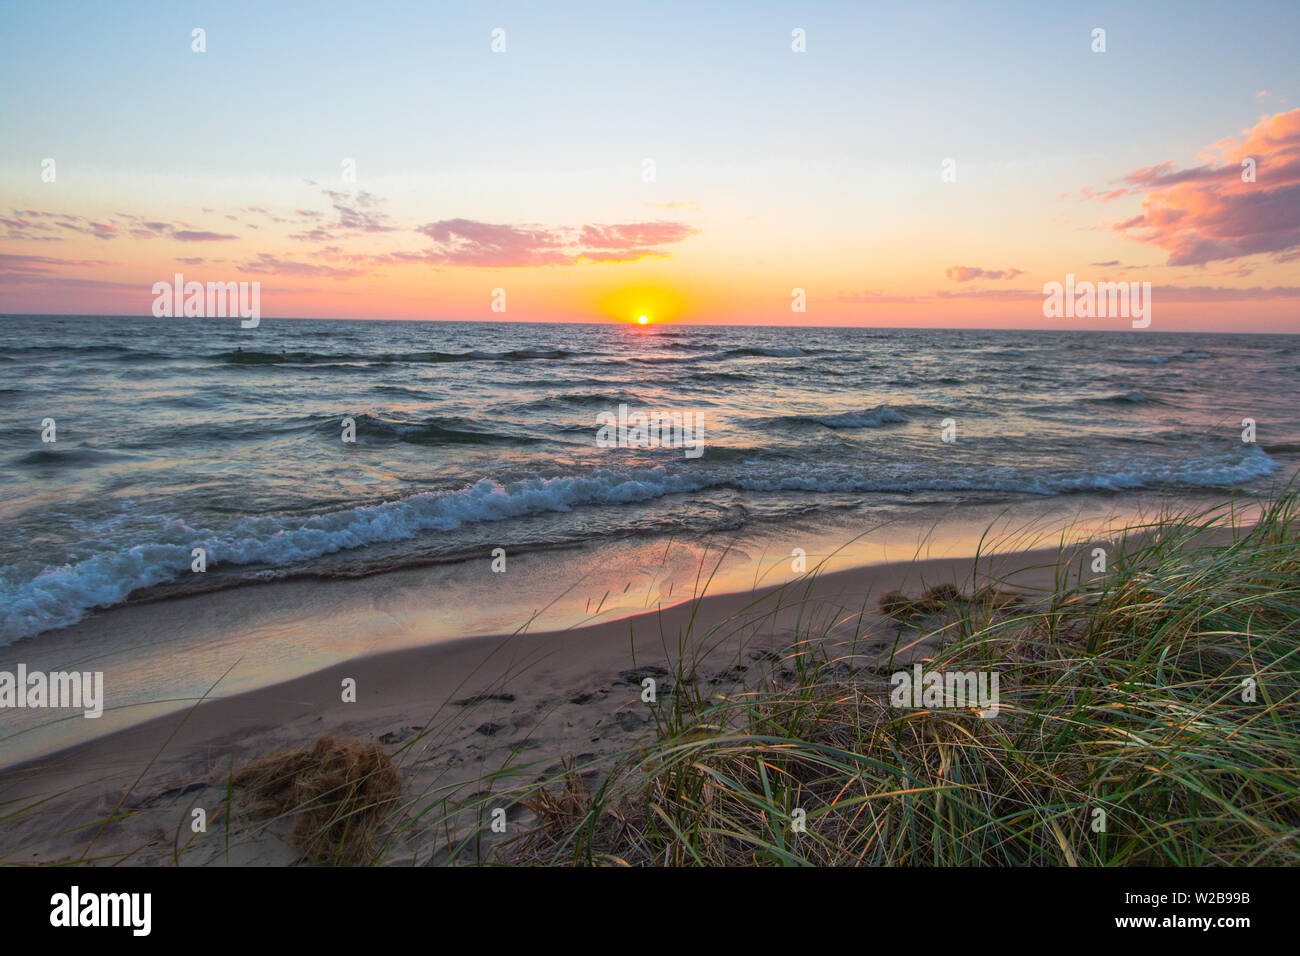 Horizon coucher du soleil se reflète sur les eaux bleues du Lac Michigan comme les vagues déferlent sur la plage. Hoffmaster State Park. Muskegon (Michigan). Banque D'Images